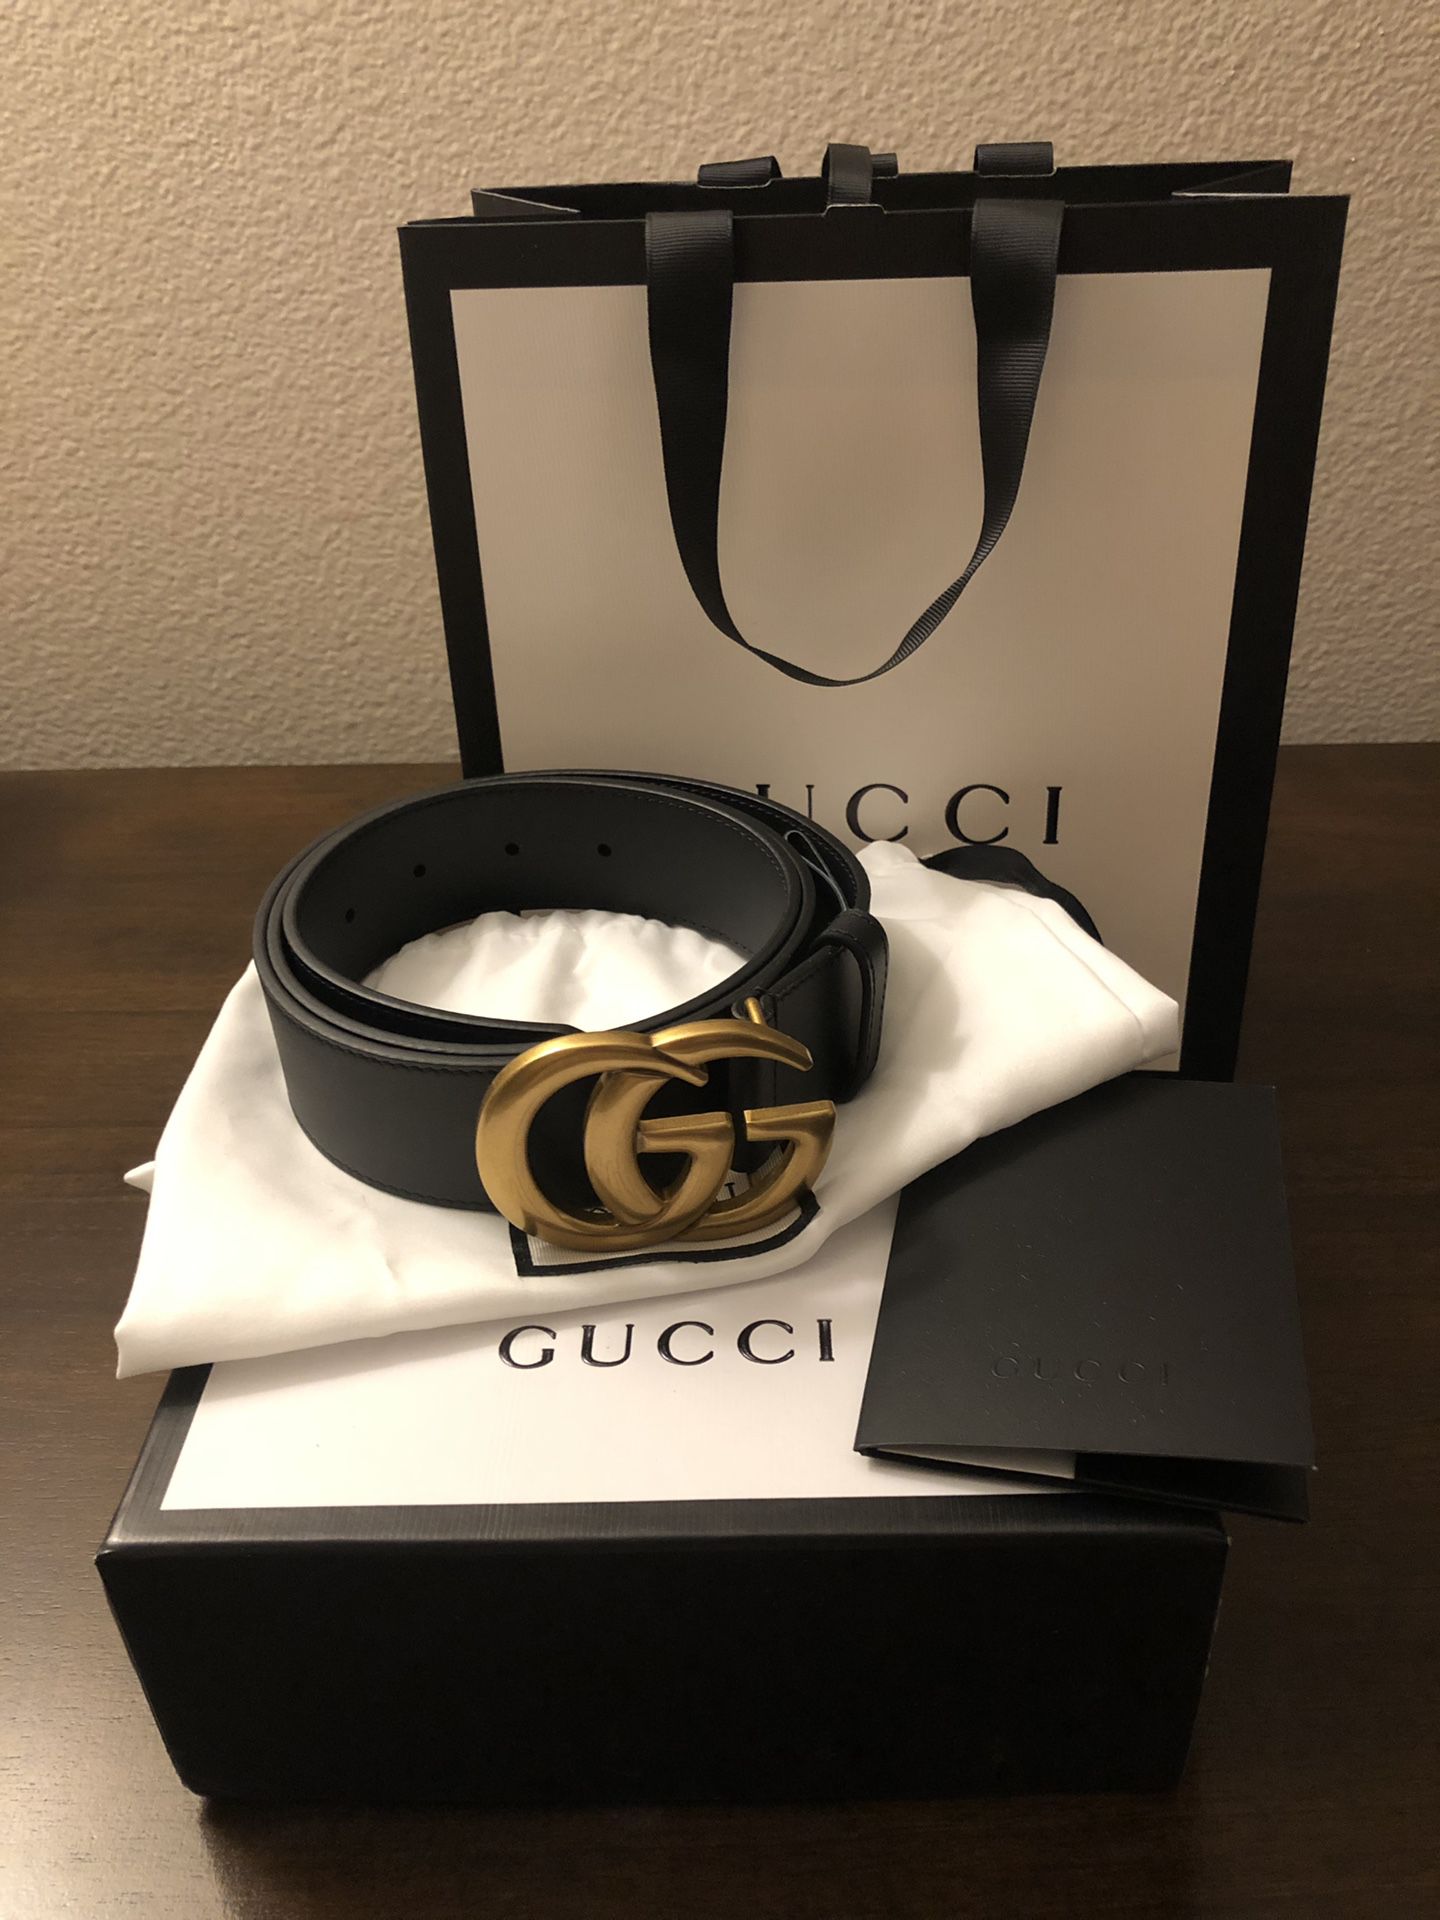 Authentic Gucci Belt (Men’s/Unisex) - GG Buckle